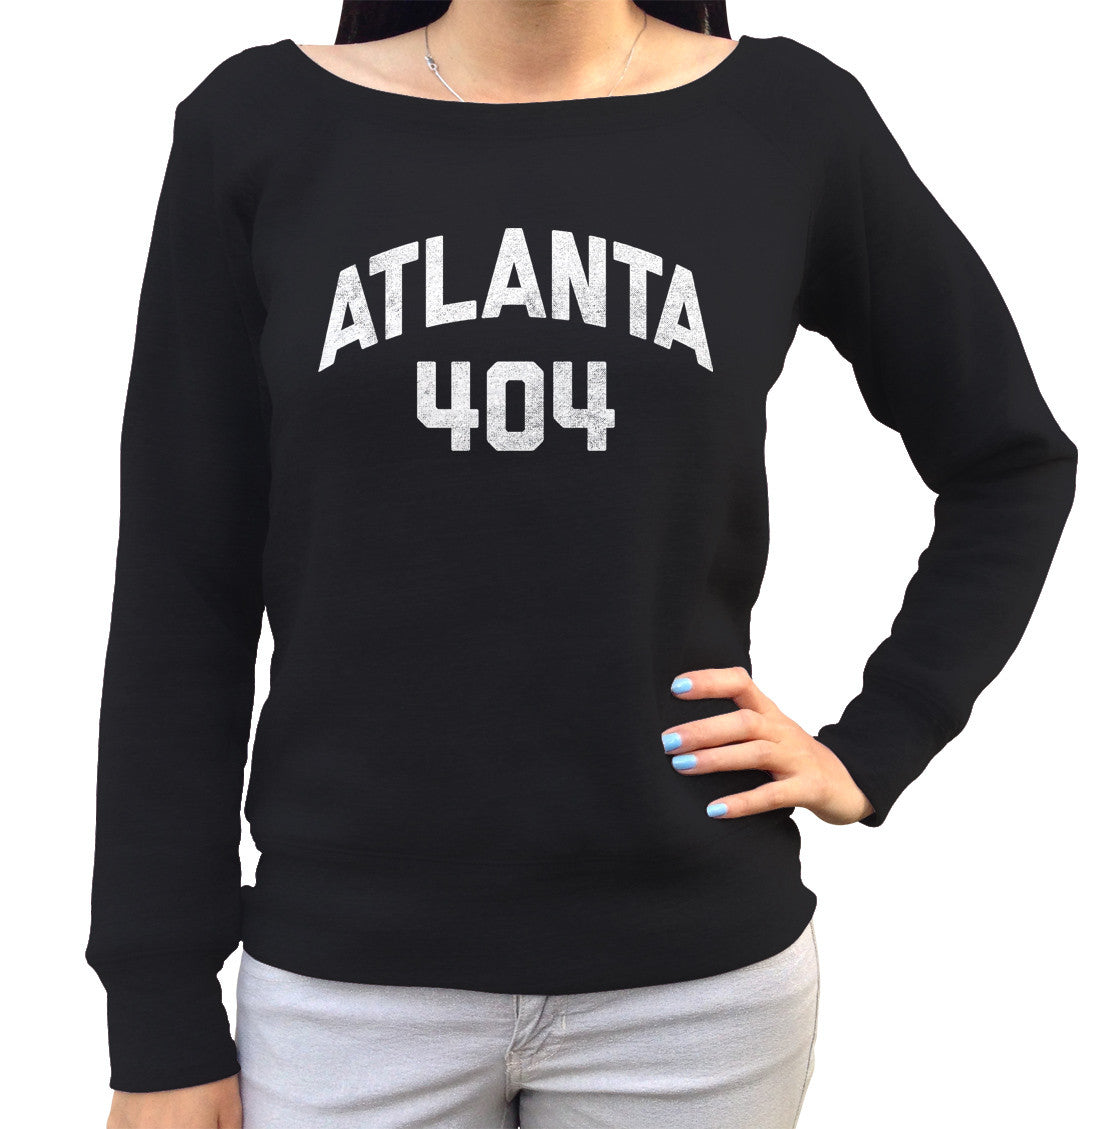 Women's Atlanta 404 Area Code Scoop Neck Fleece